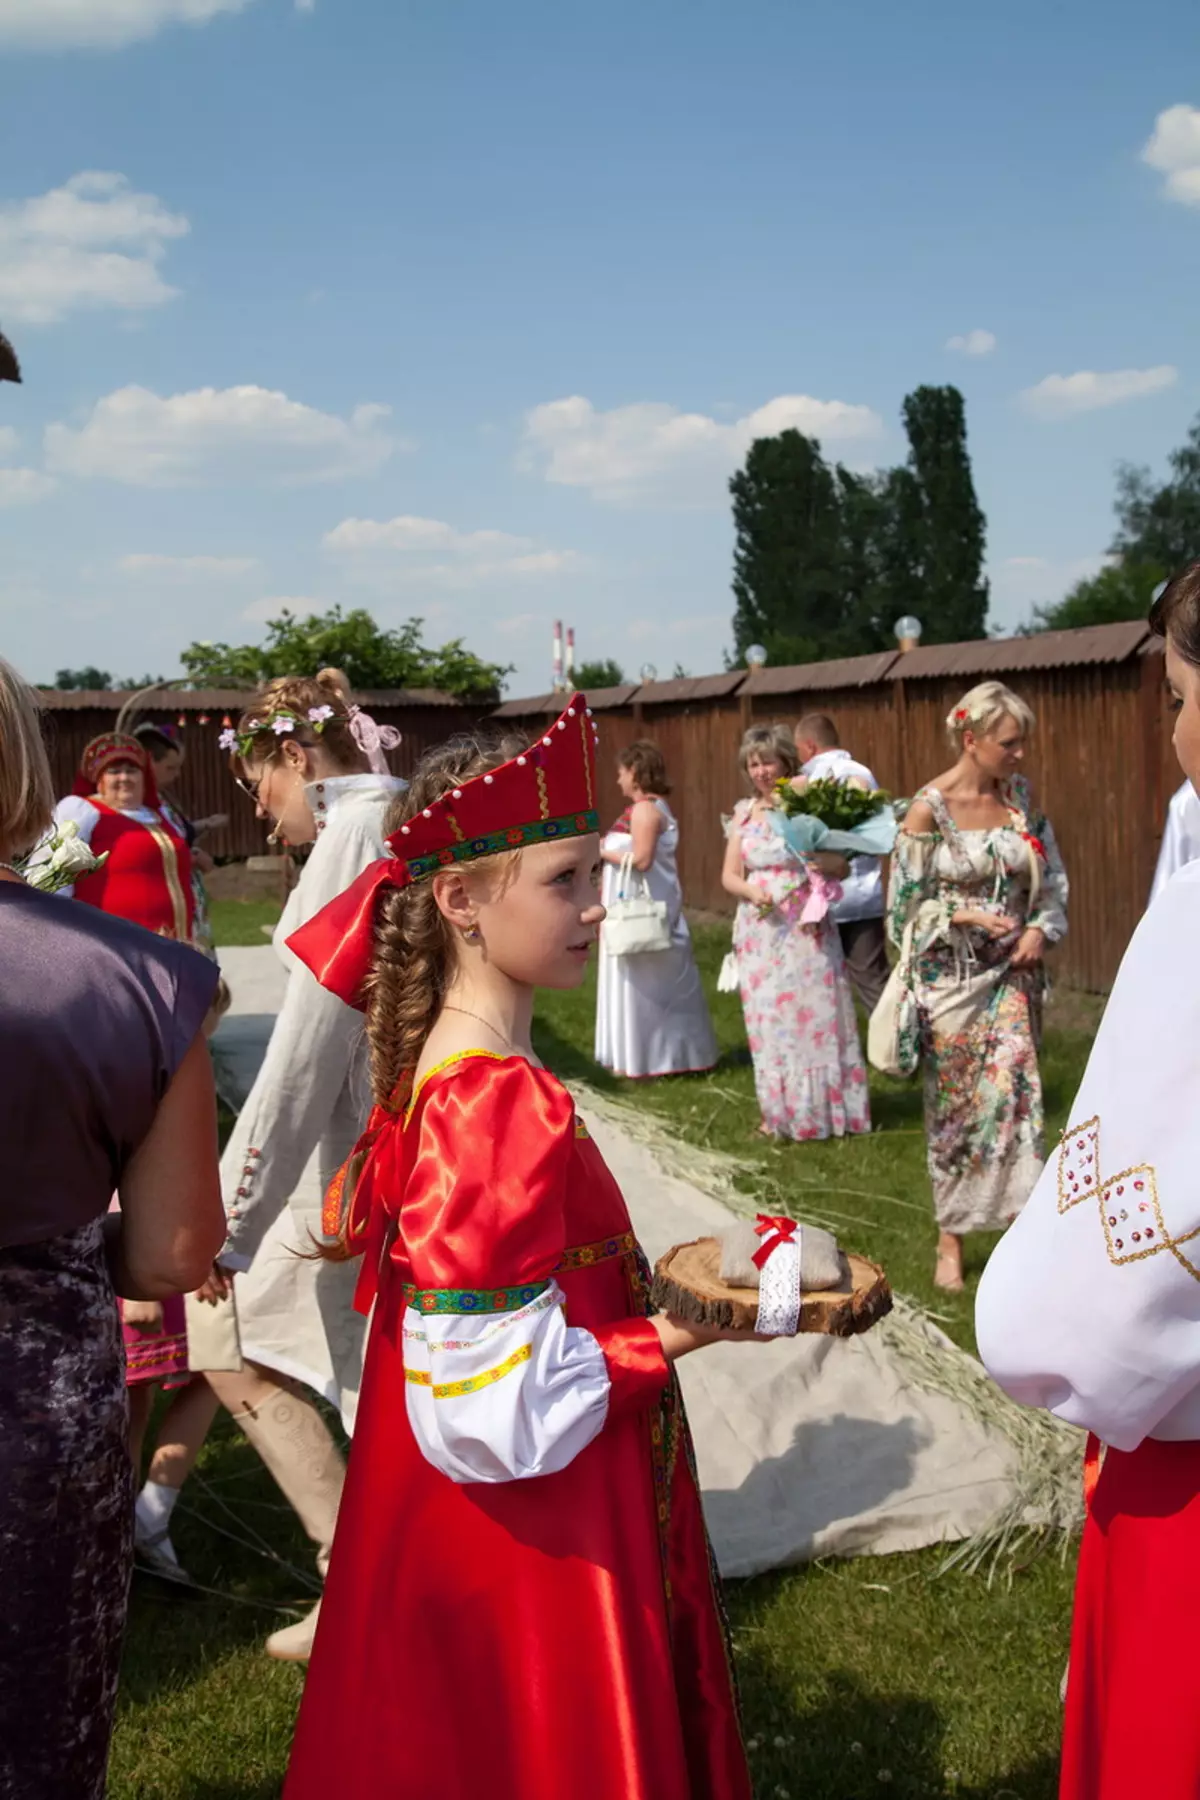 Wedding in style style (73 foto): Registrasi perayaan ing rakyat Rusia lan gaya slavonic lawas, nahan kawinan sing stylized ing musim panas lan mangsa 7844_15